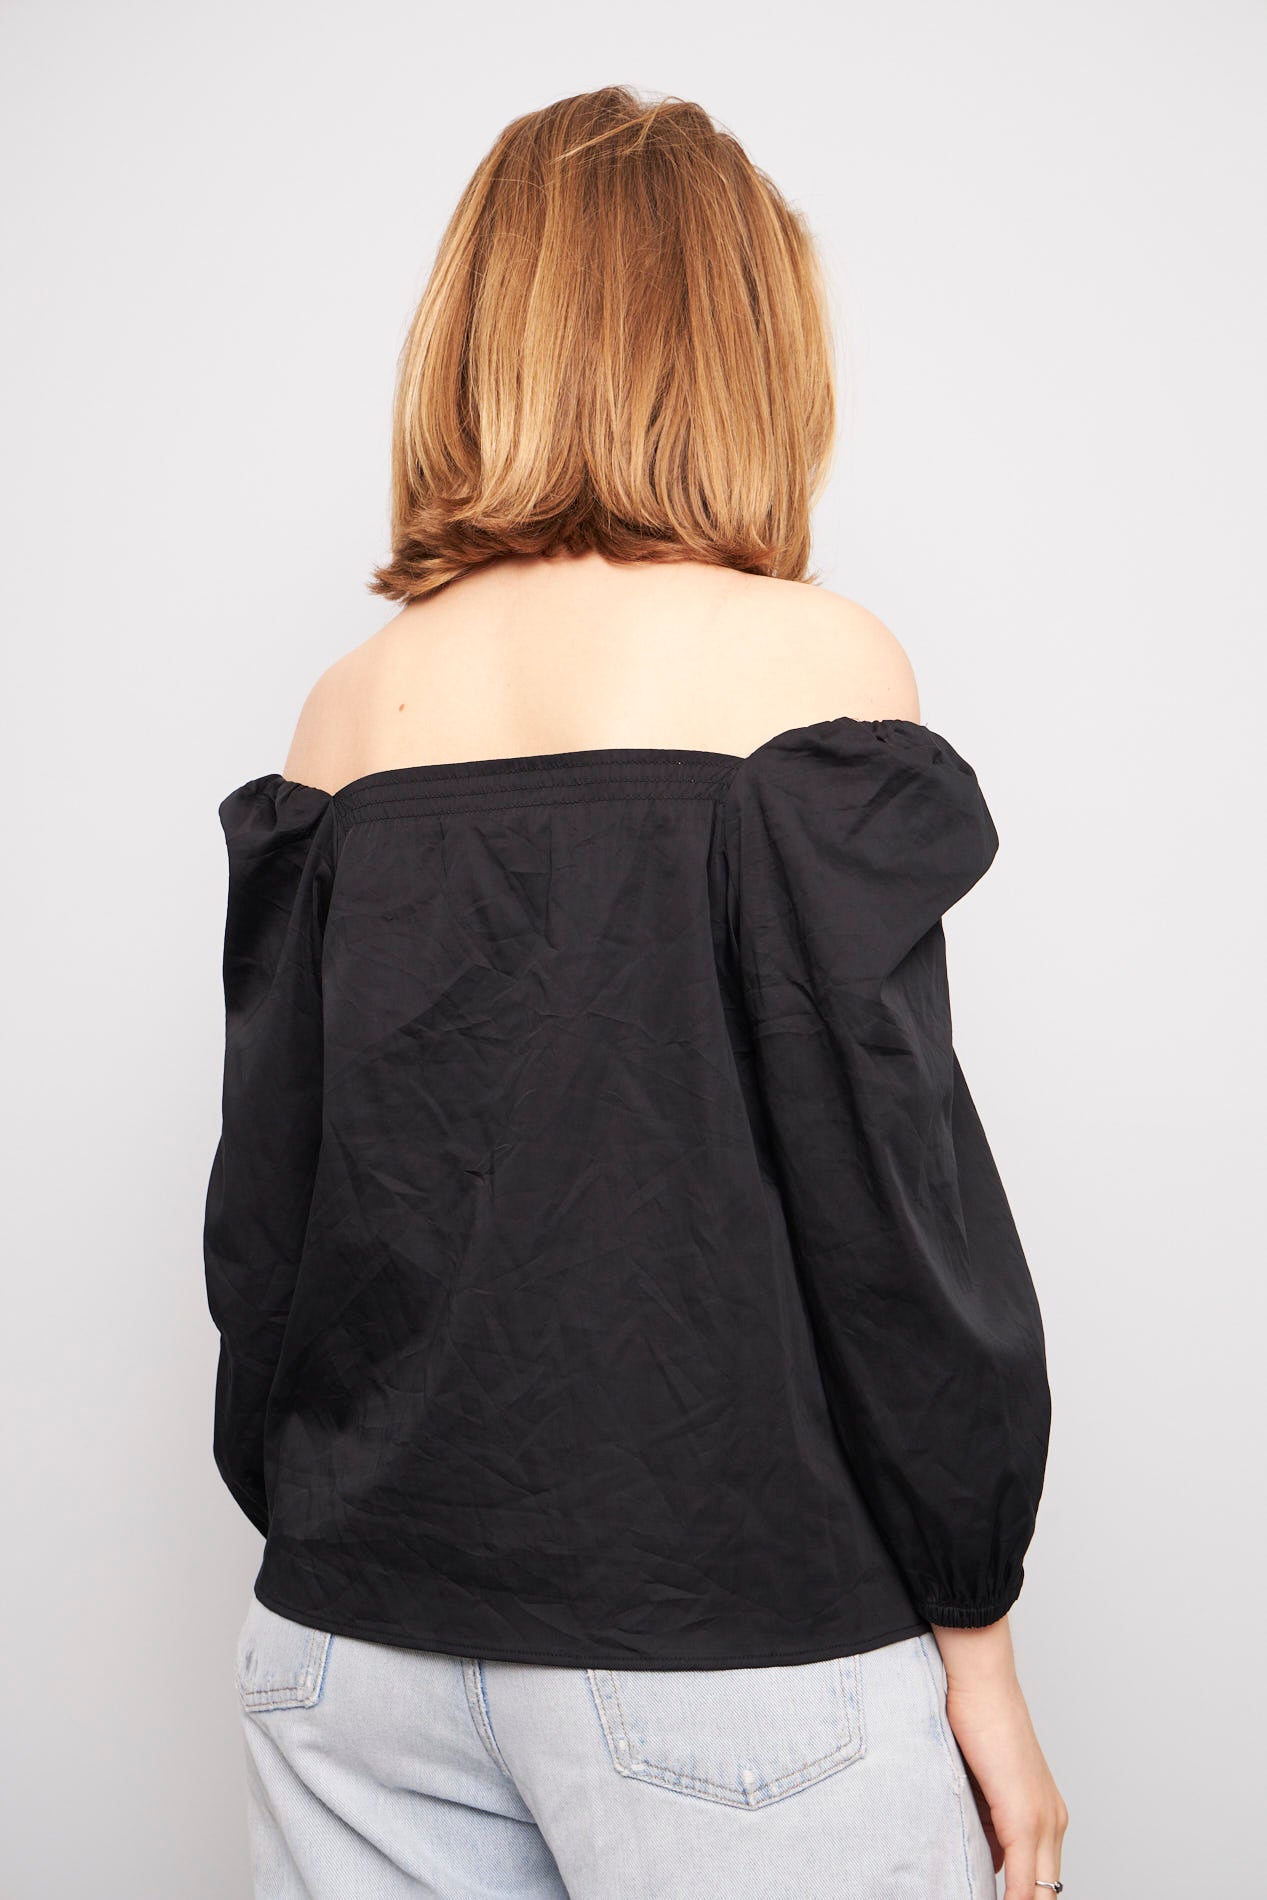 Blusa casual  negro elizabethandjames talla M 763